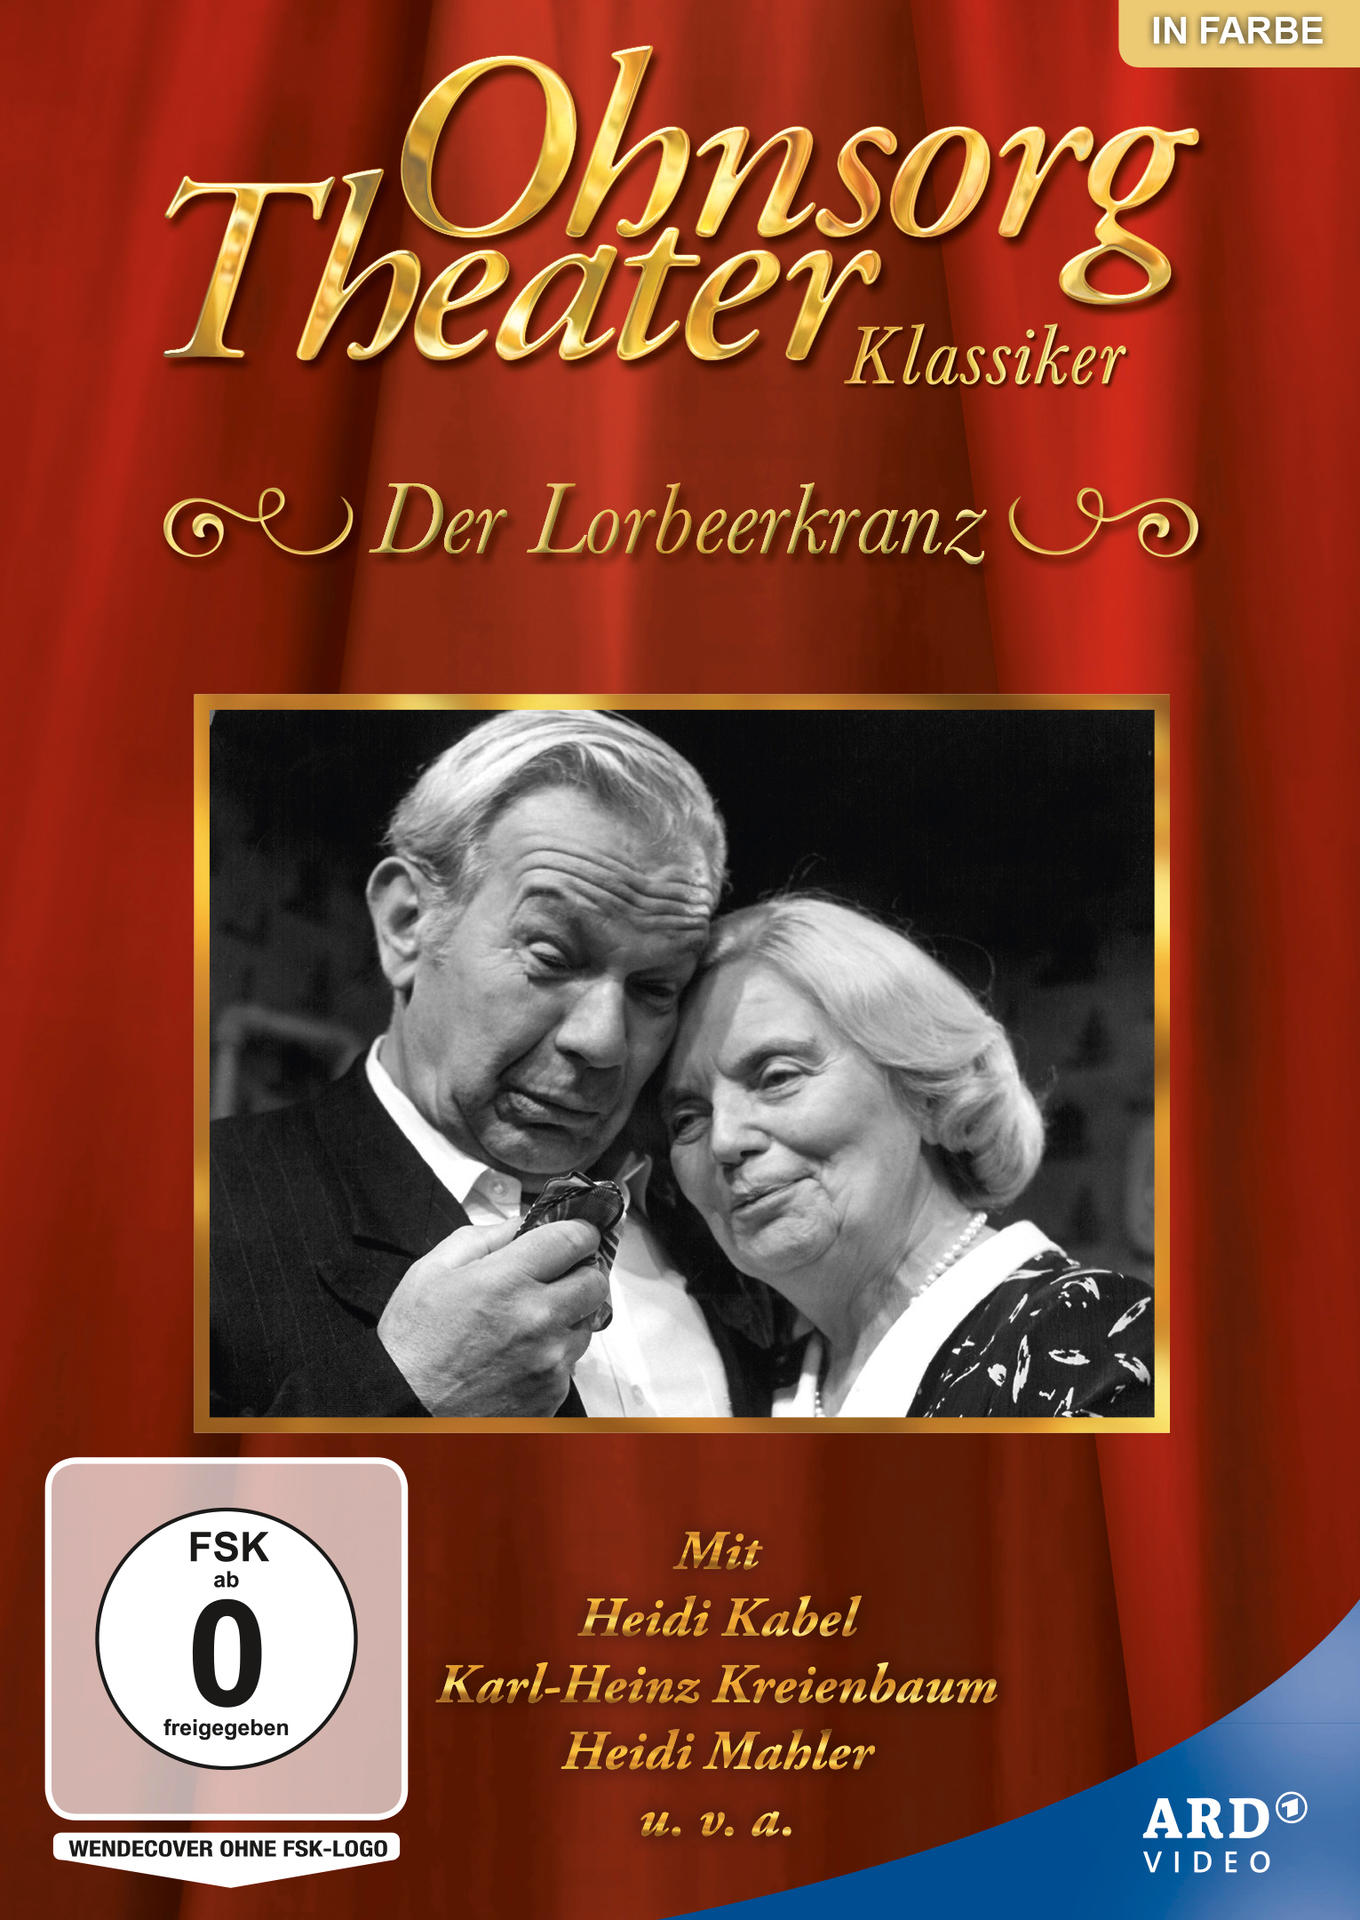 Ohnsorg-Theater Klassiker: Der Lorbeerkranz DVD